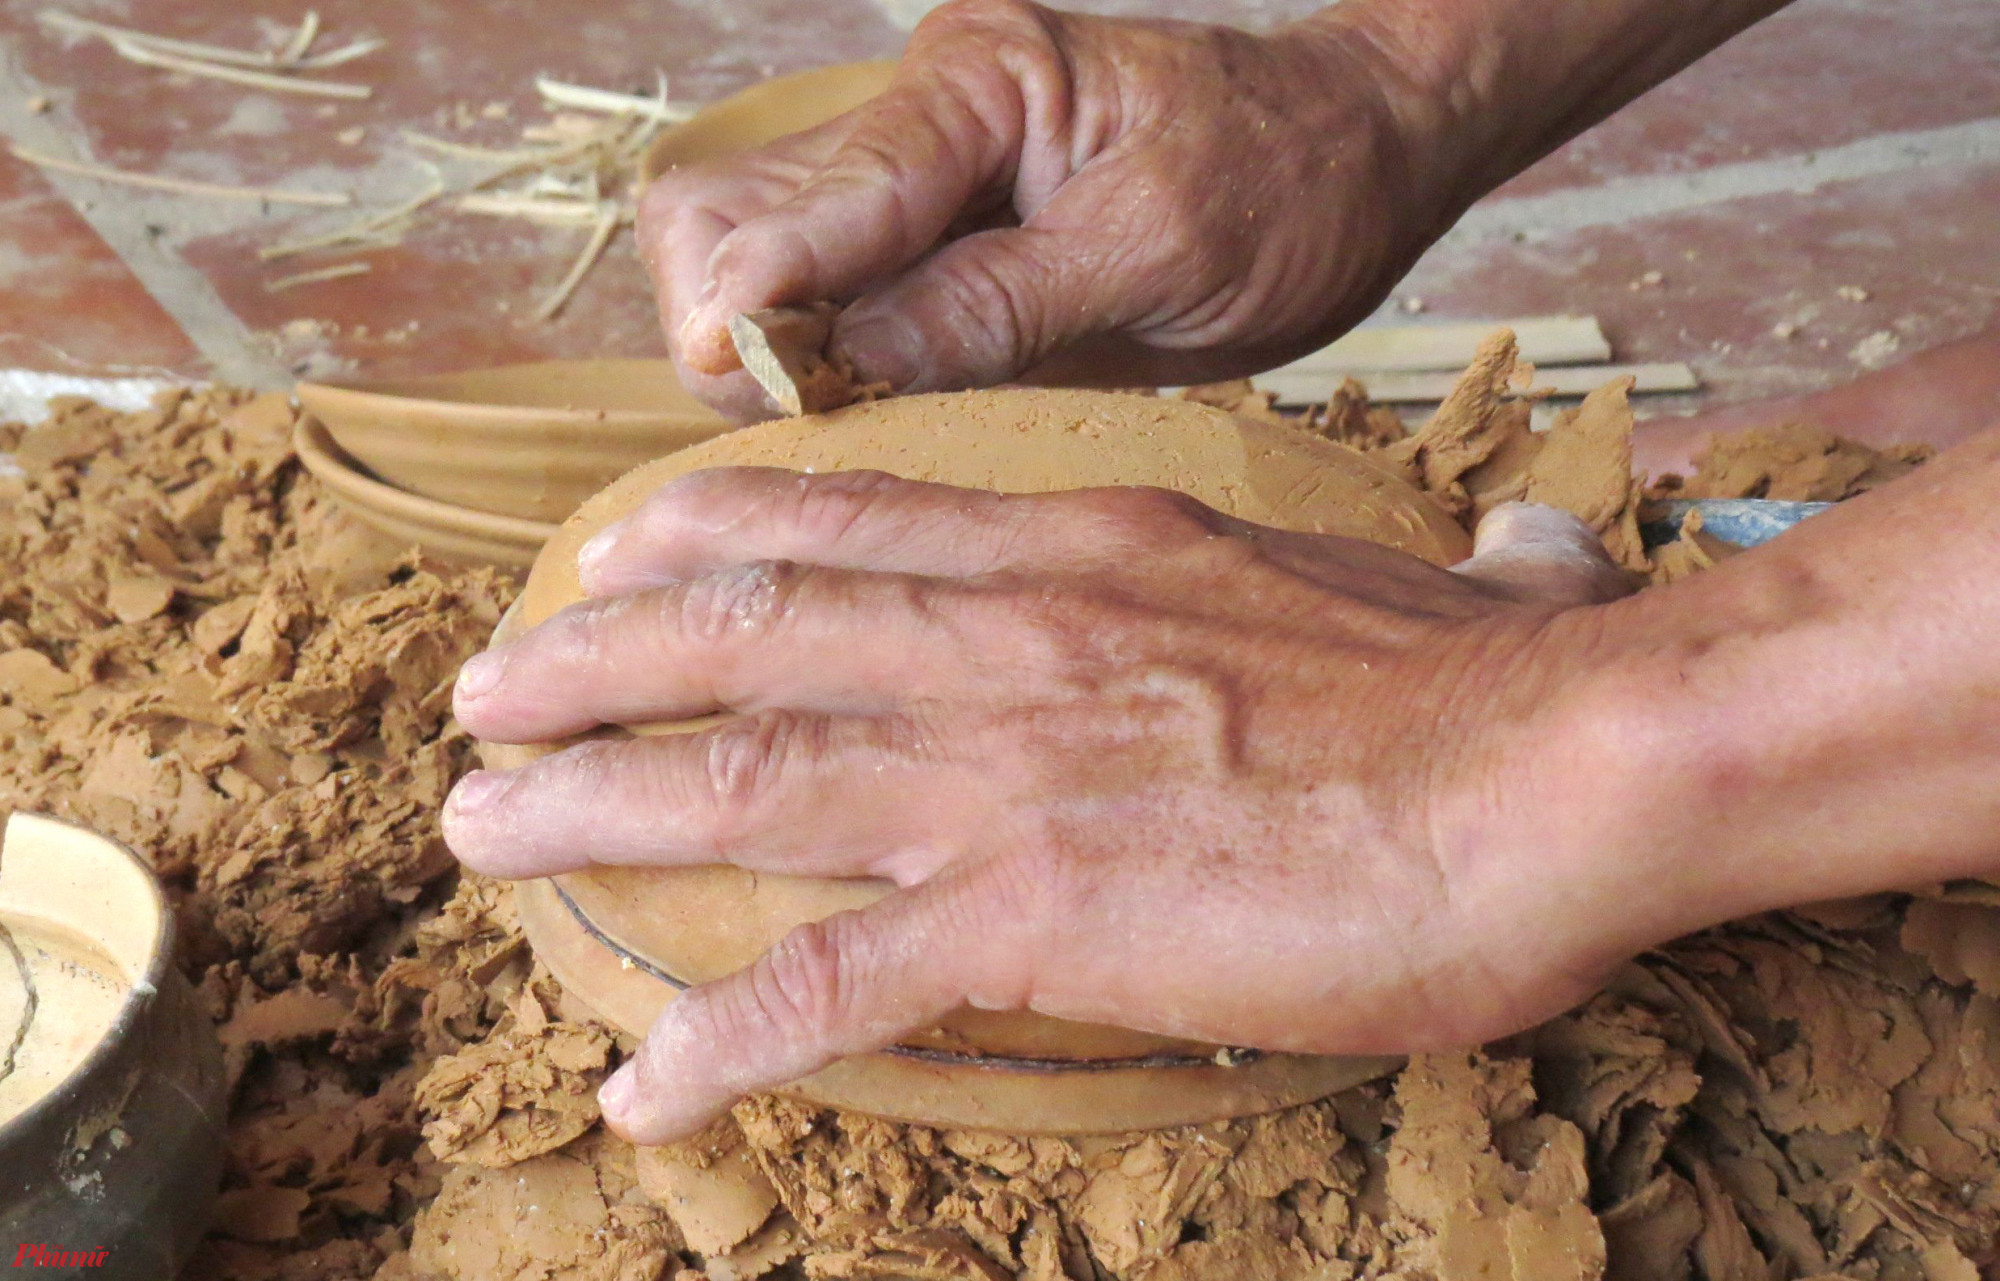 Dụng cụ làm nghề của người thợ ở Trù Sơn cũng chỉ có một bàn xoay, vài miếng giẻ nhỏ và khoanh nứa mỏng để cắt gọt. 